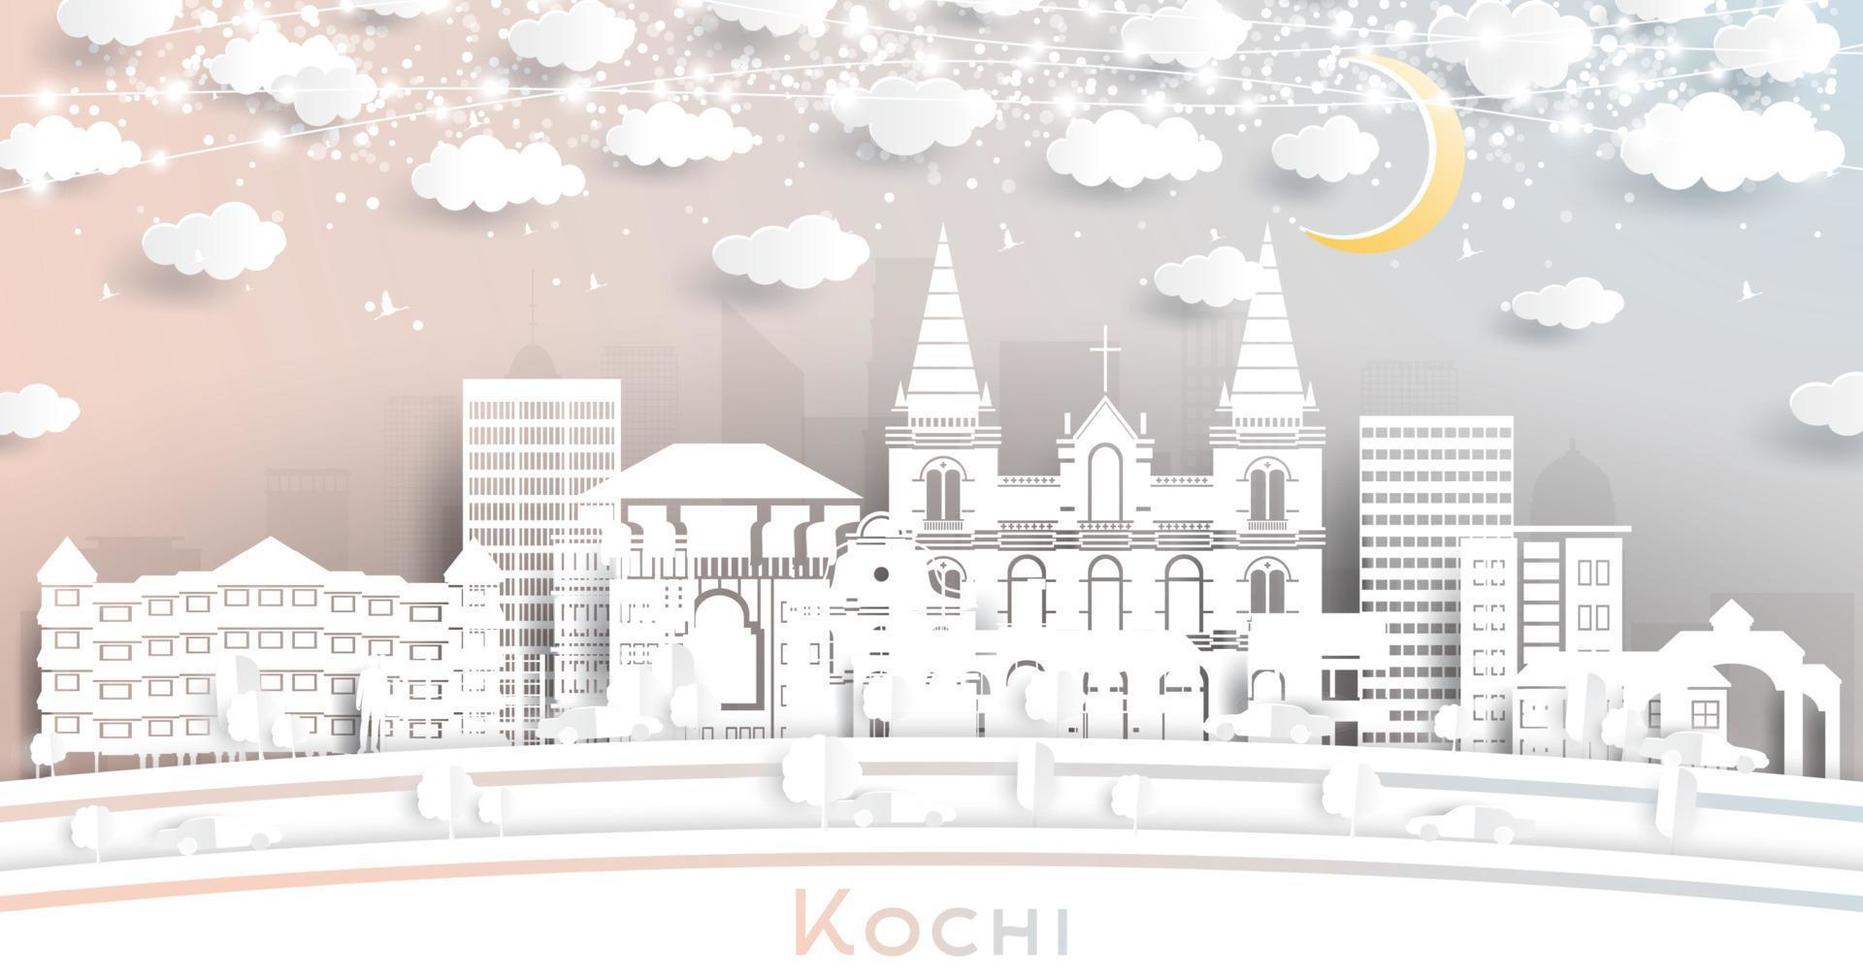 horizonte de la ciudad de kochi india en estilo de corte de papel con edificios blancos, luna y guirnalda de neón. vector